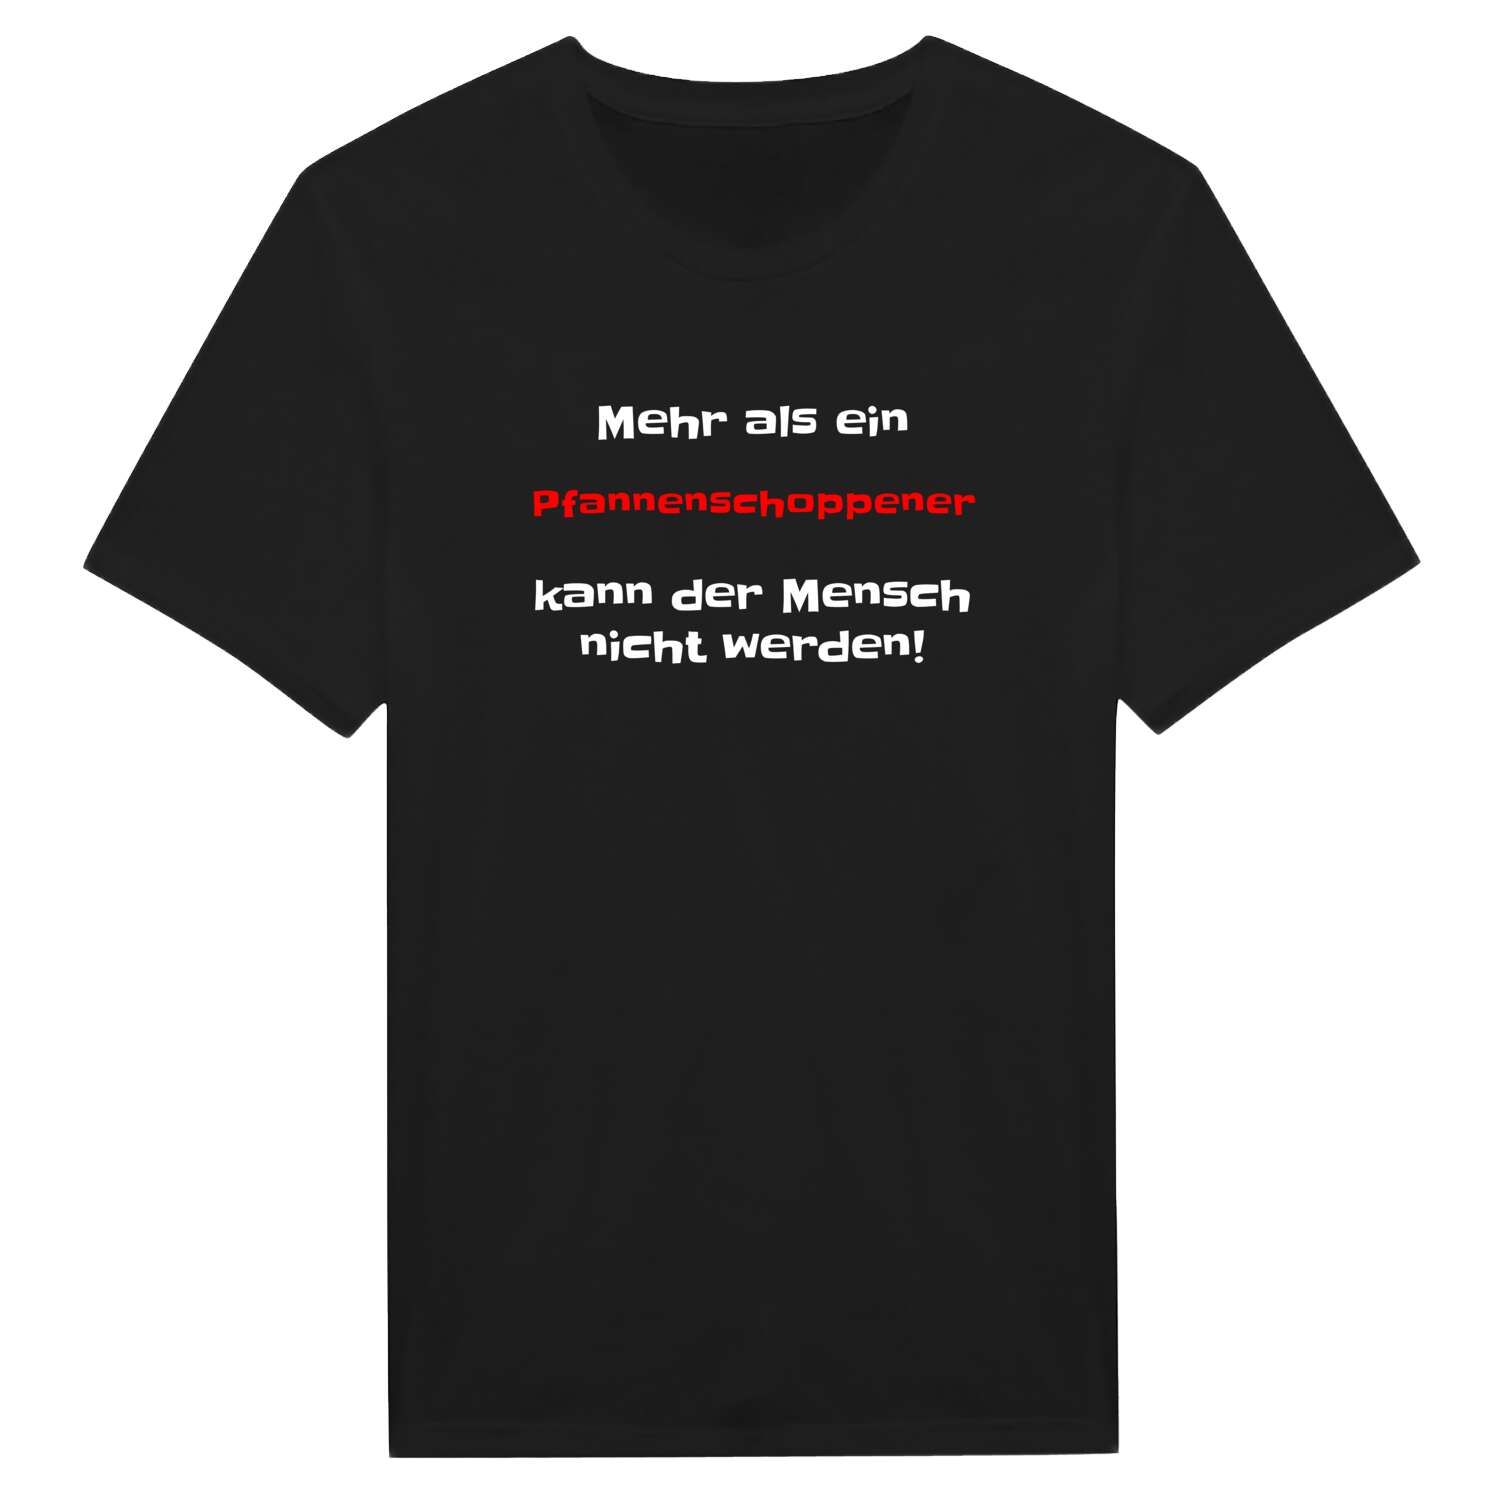 Pfannenschoppen T-Shirt »Mehr als ein«